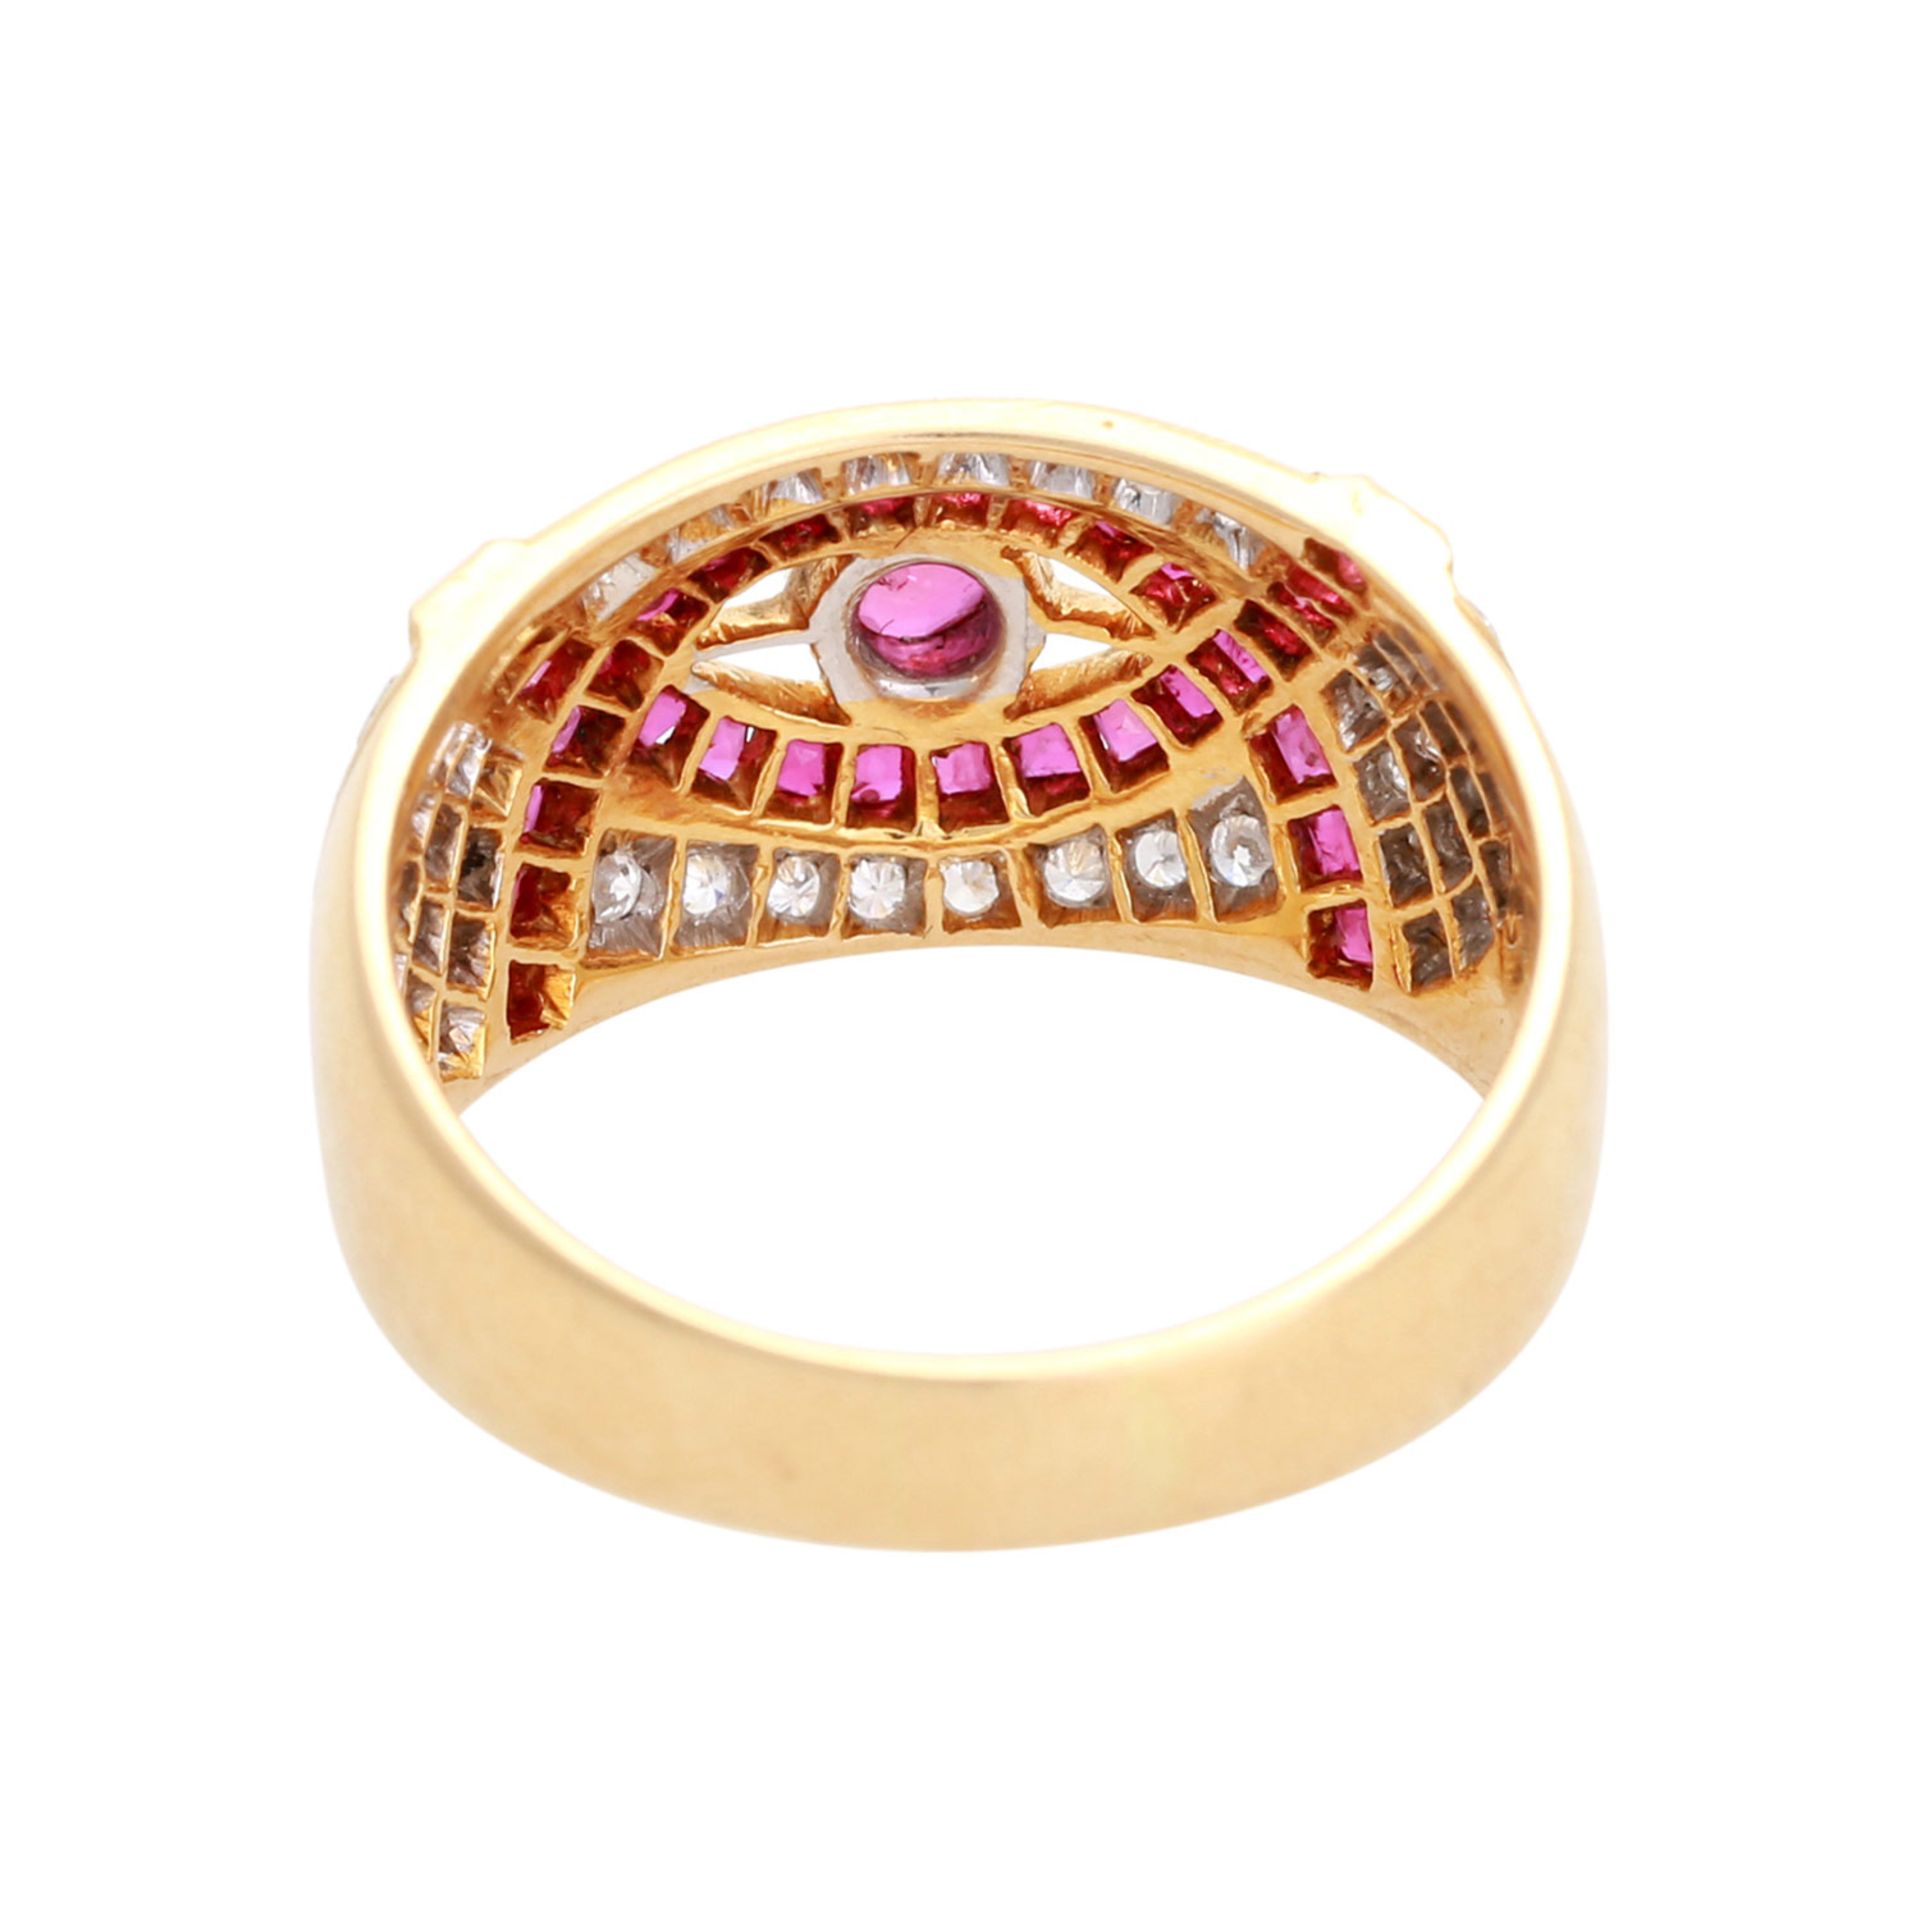 Ring mit Diamantbesatz, zus. ca. 0,35 ct, LGW (I-J) / SI, und Rubinen, 1x rund facettiert, - Bild 4 aus 4